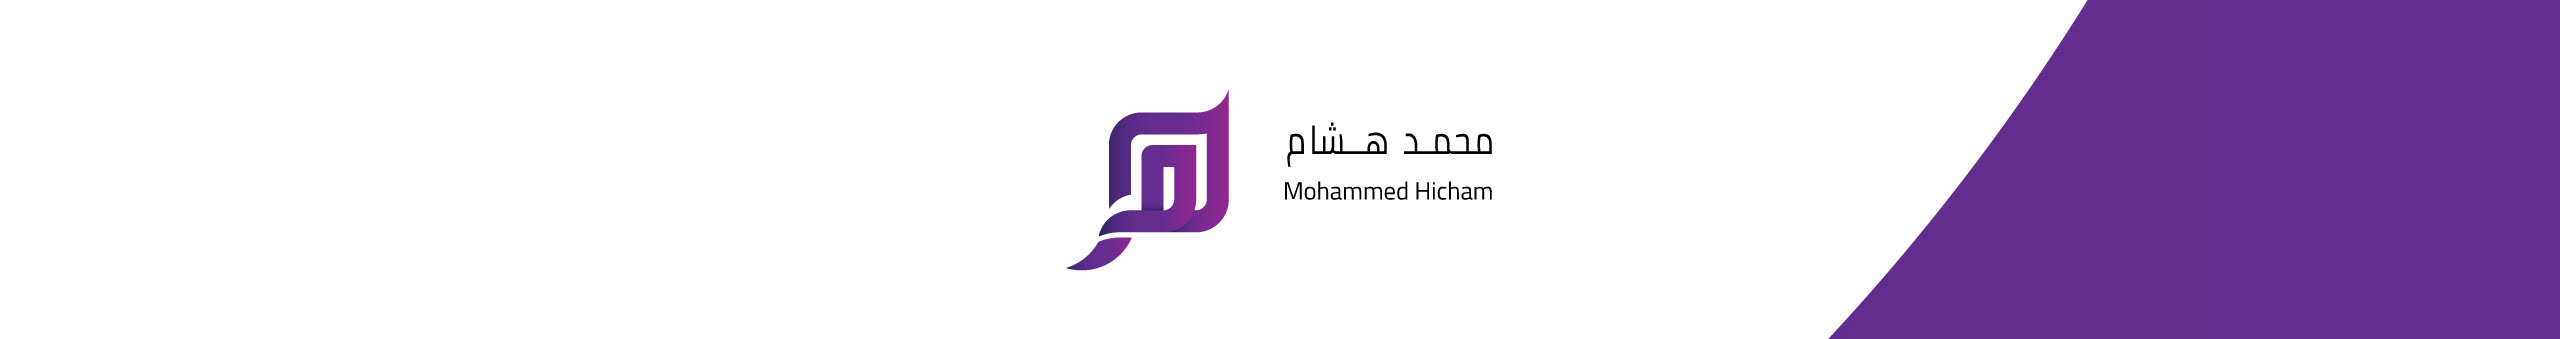 Mohammed Hicham HS's profile banner